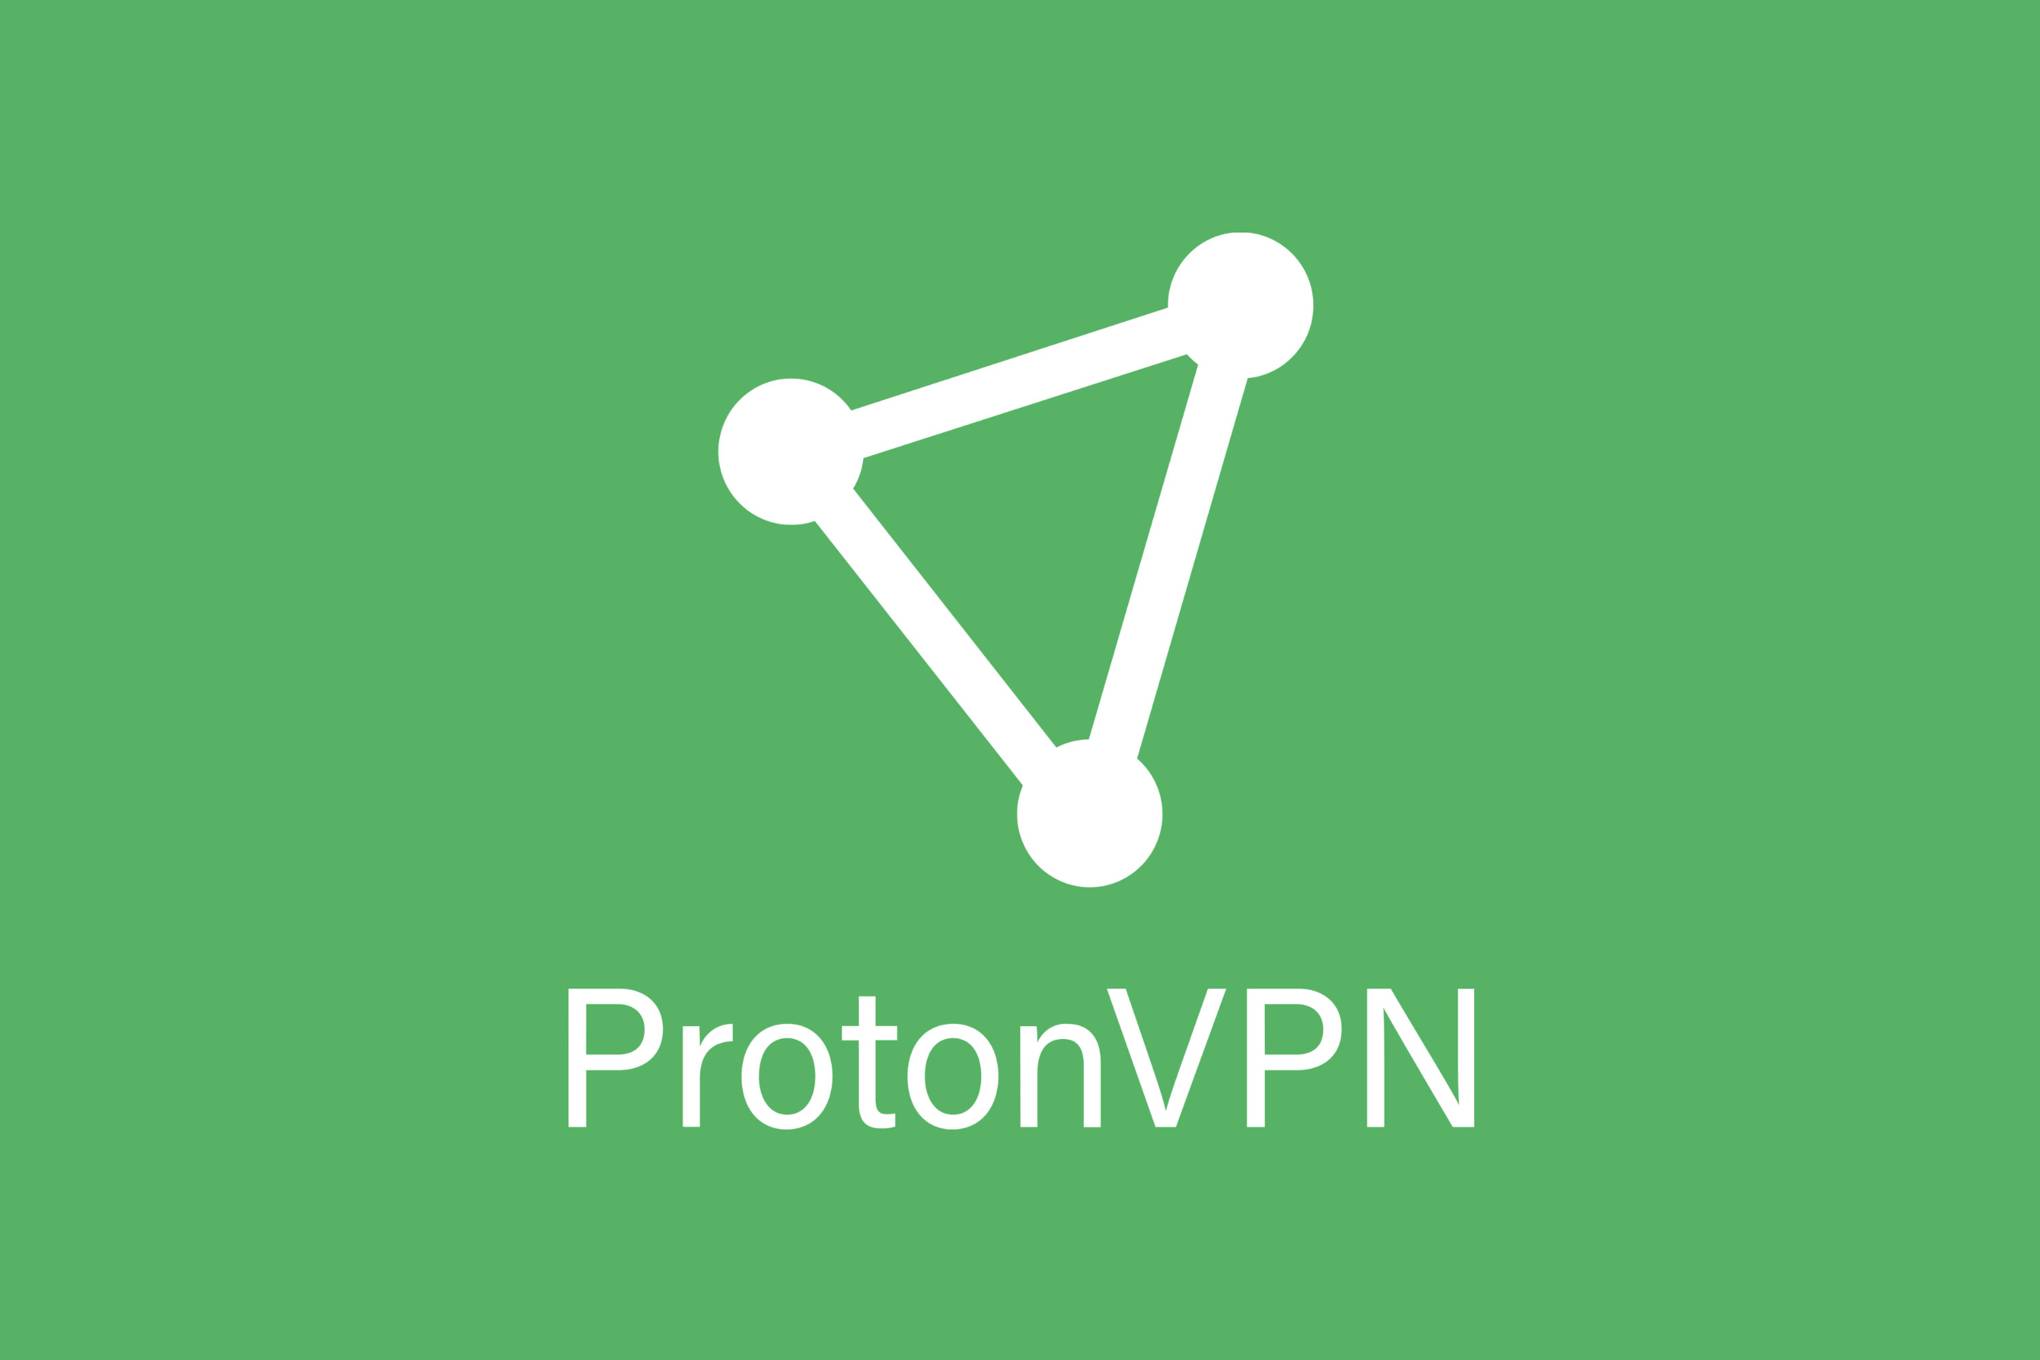 Proton-VPN